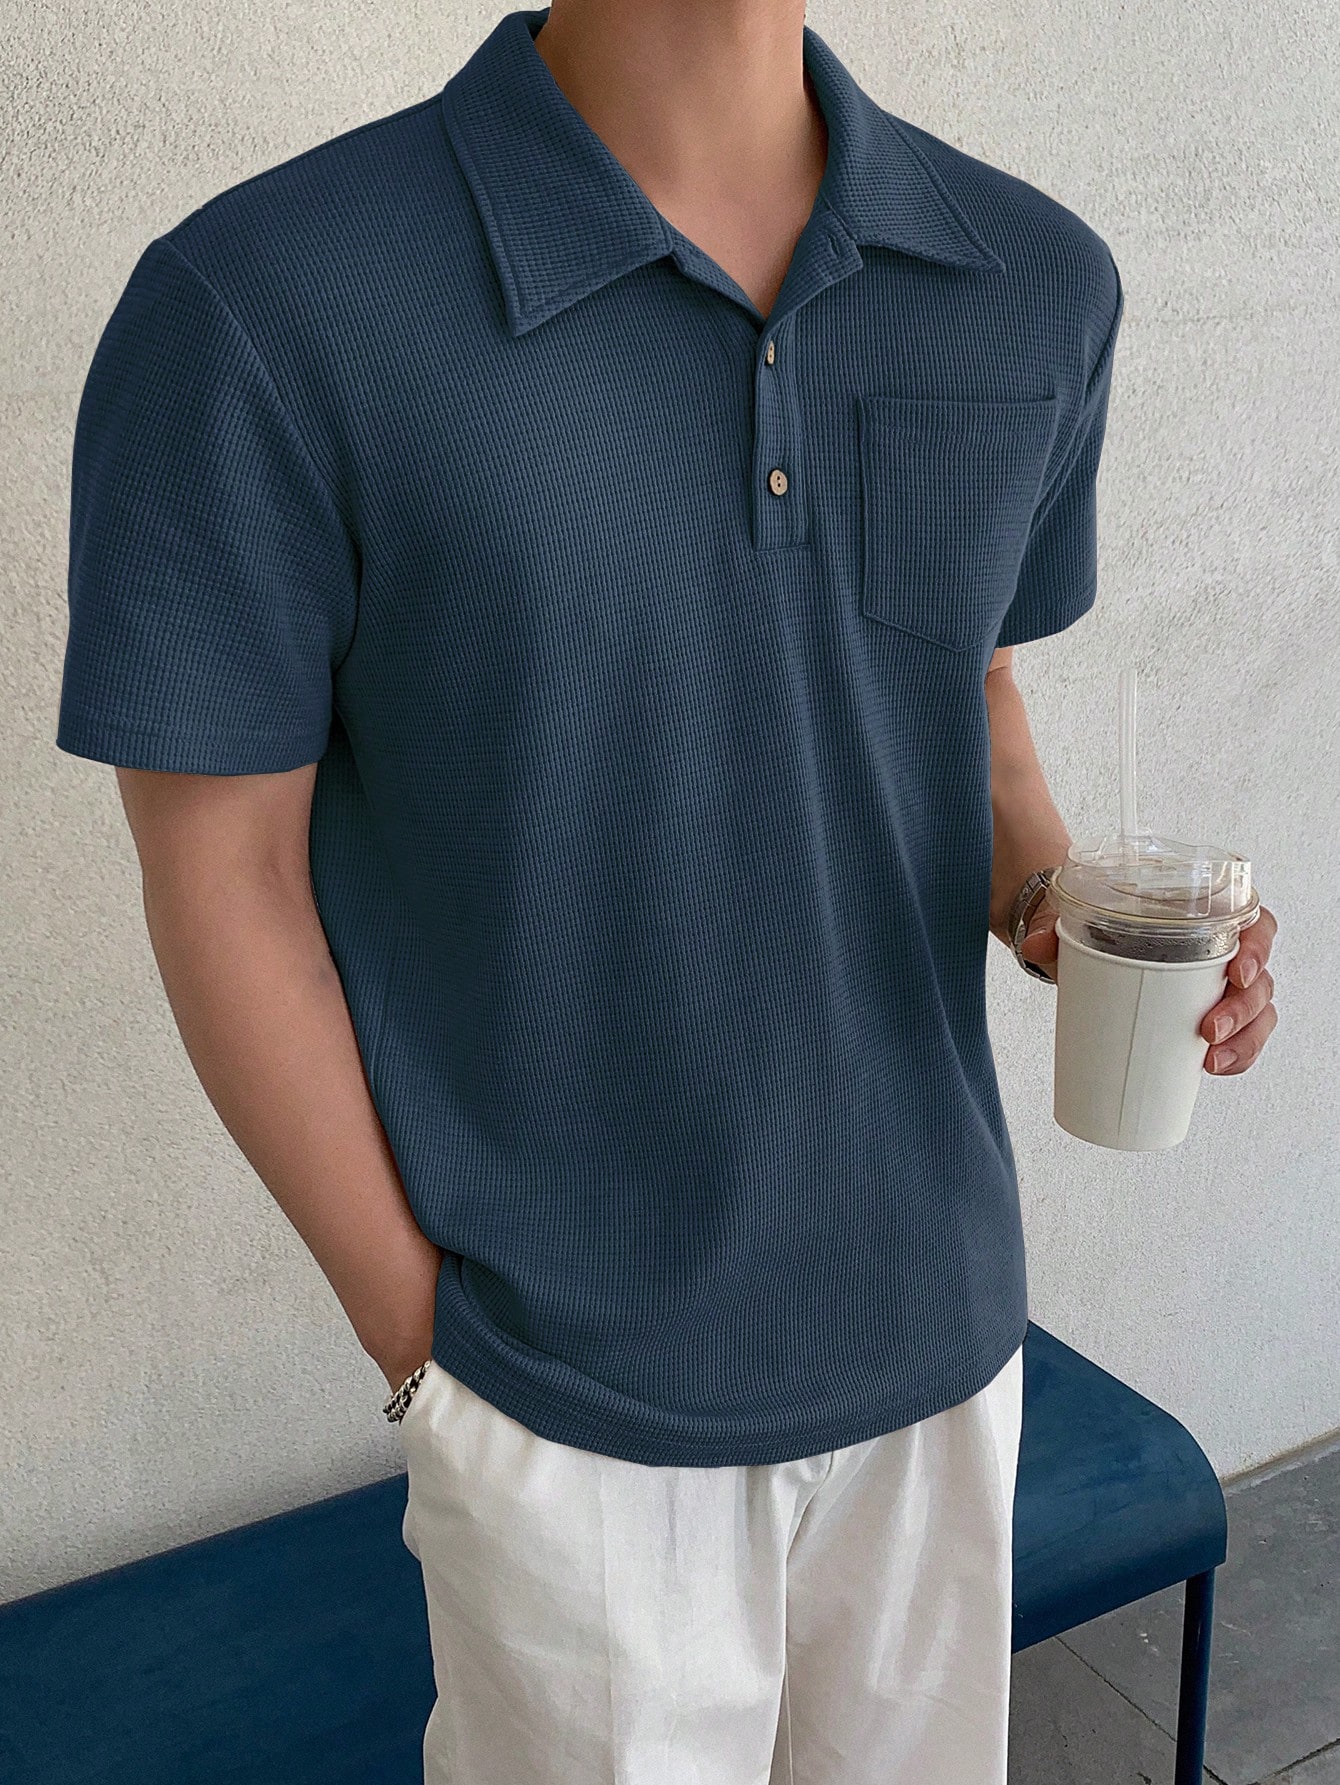 DAZY Мужская однотонная рубашка поло с коротким рукавом на лето, пыльный синий dazy мужская летняя рубашка с коротким рукавом и принтом пейсли многоцветный